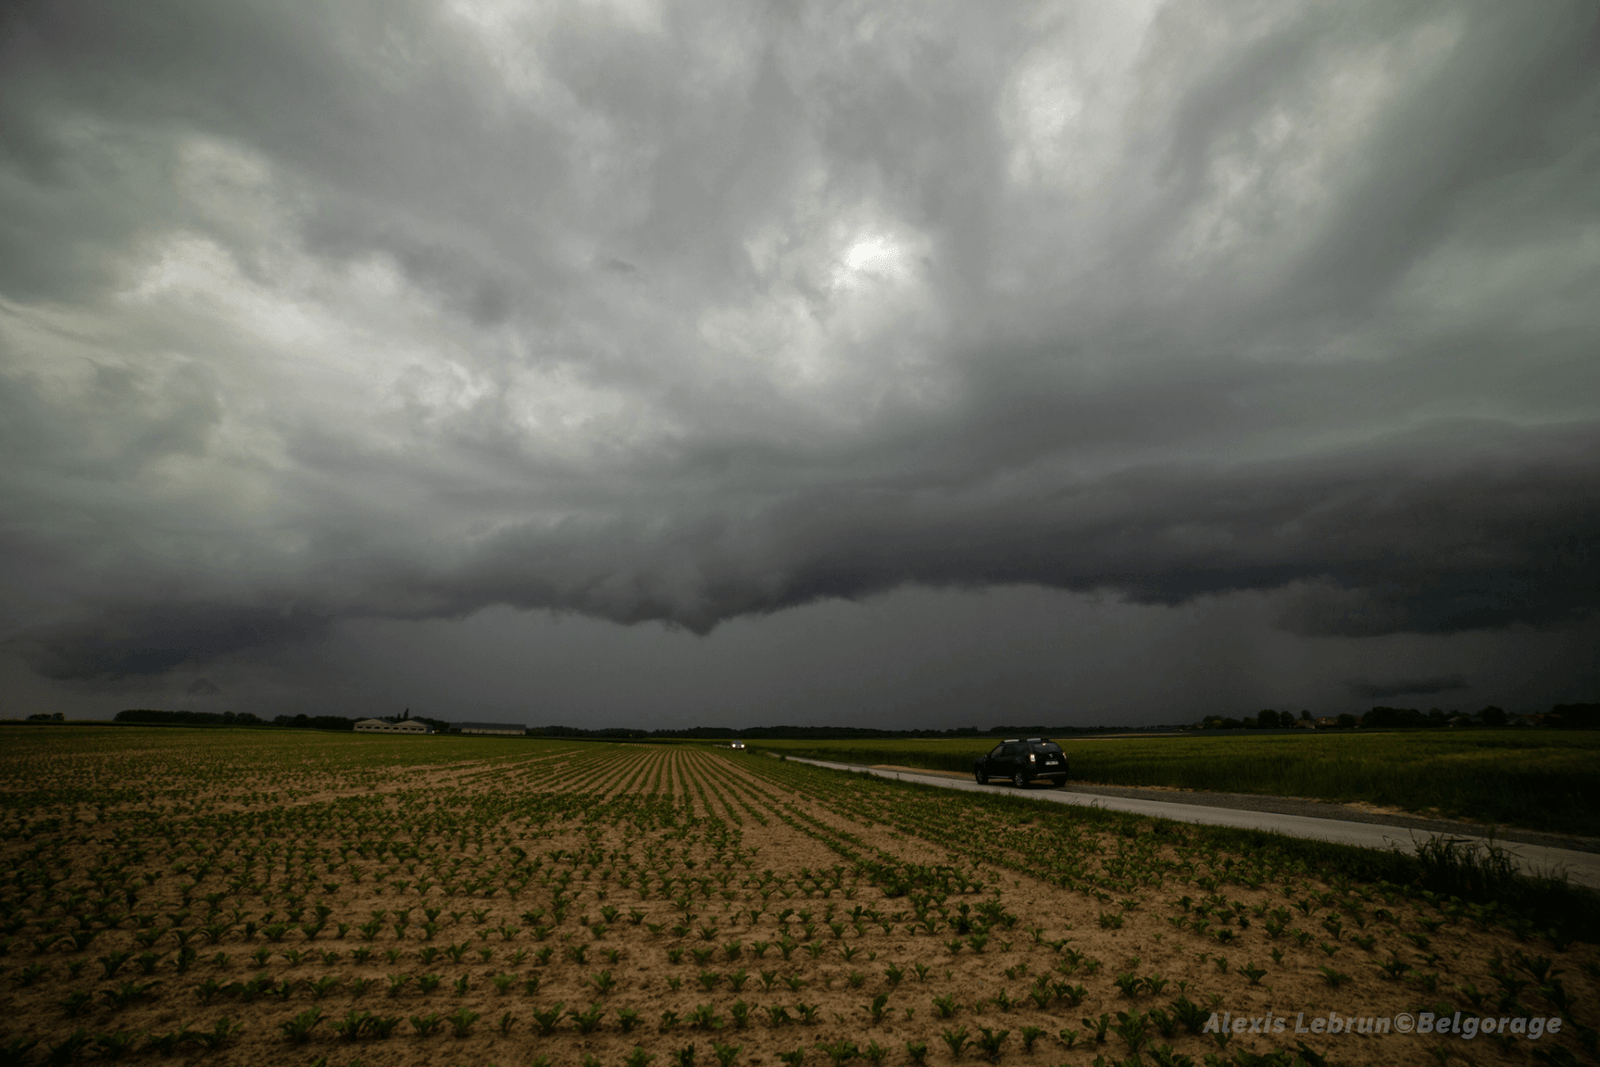 Arcus précédant la masse pluvio-orageuse en phase d'effondrement, depuis la région de Beauvechain, en province de Brabant Wallon, le 4 juin 2021 à 18h45.